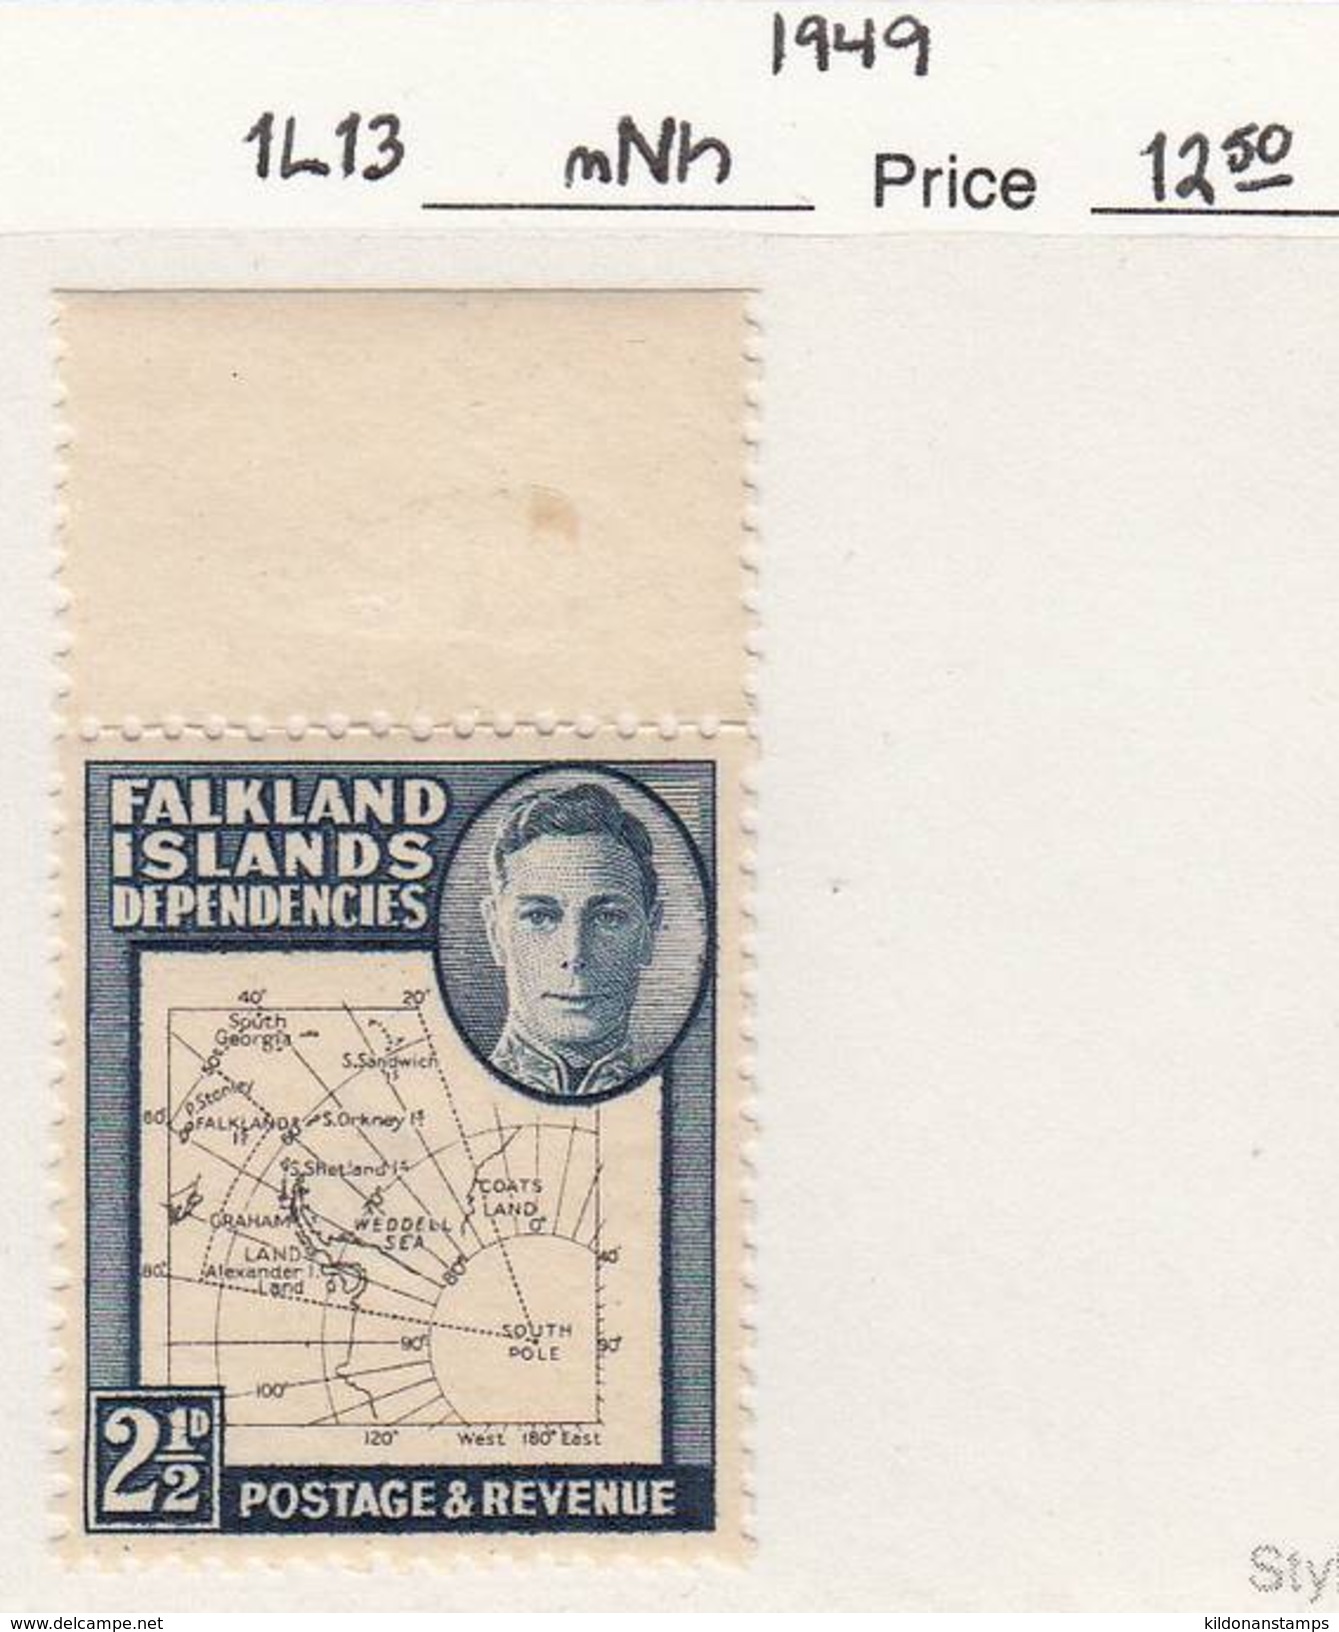 Falkland Islands Dep. 1949 Mint No Hinge, Sc# 1L13, SG G11b - Falkland